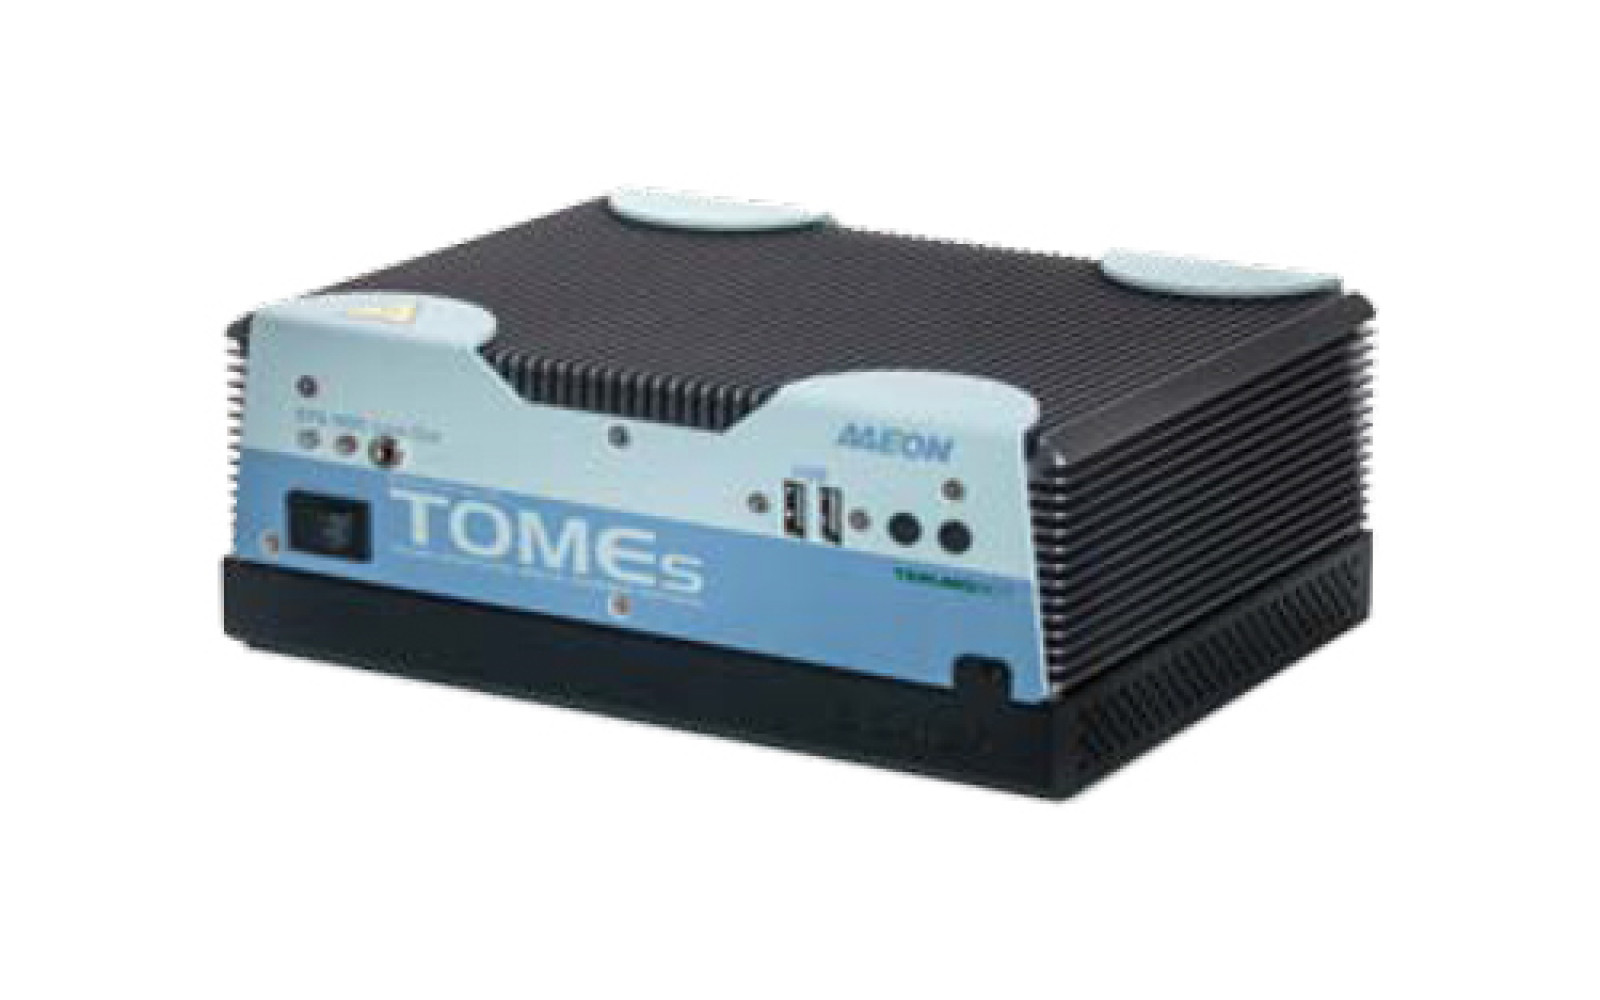 TOMEs — аппаратное обеспечение системы обработки и сбора данных